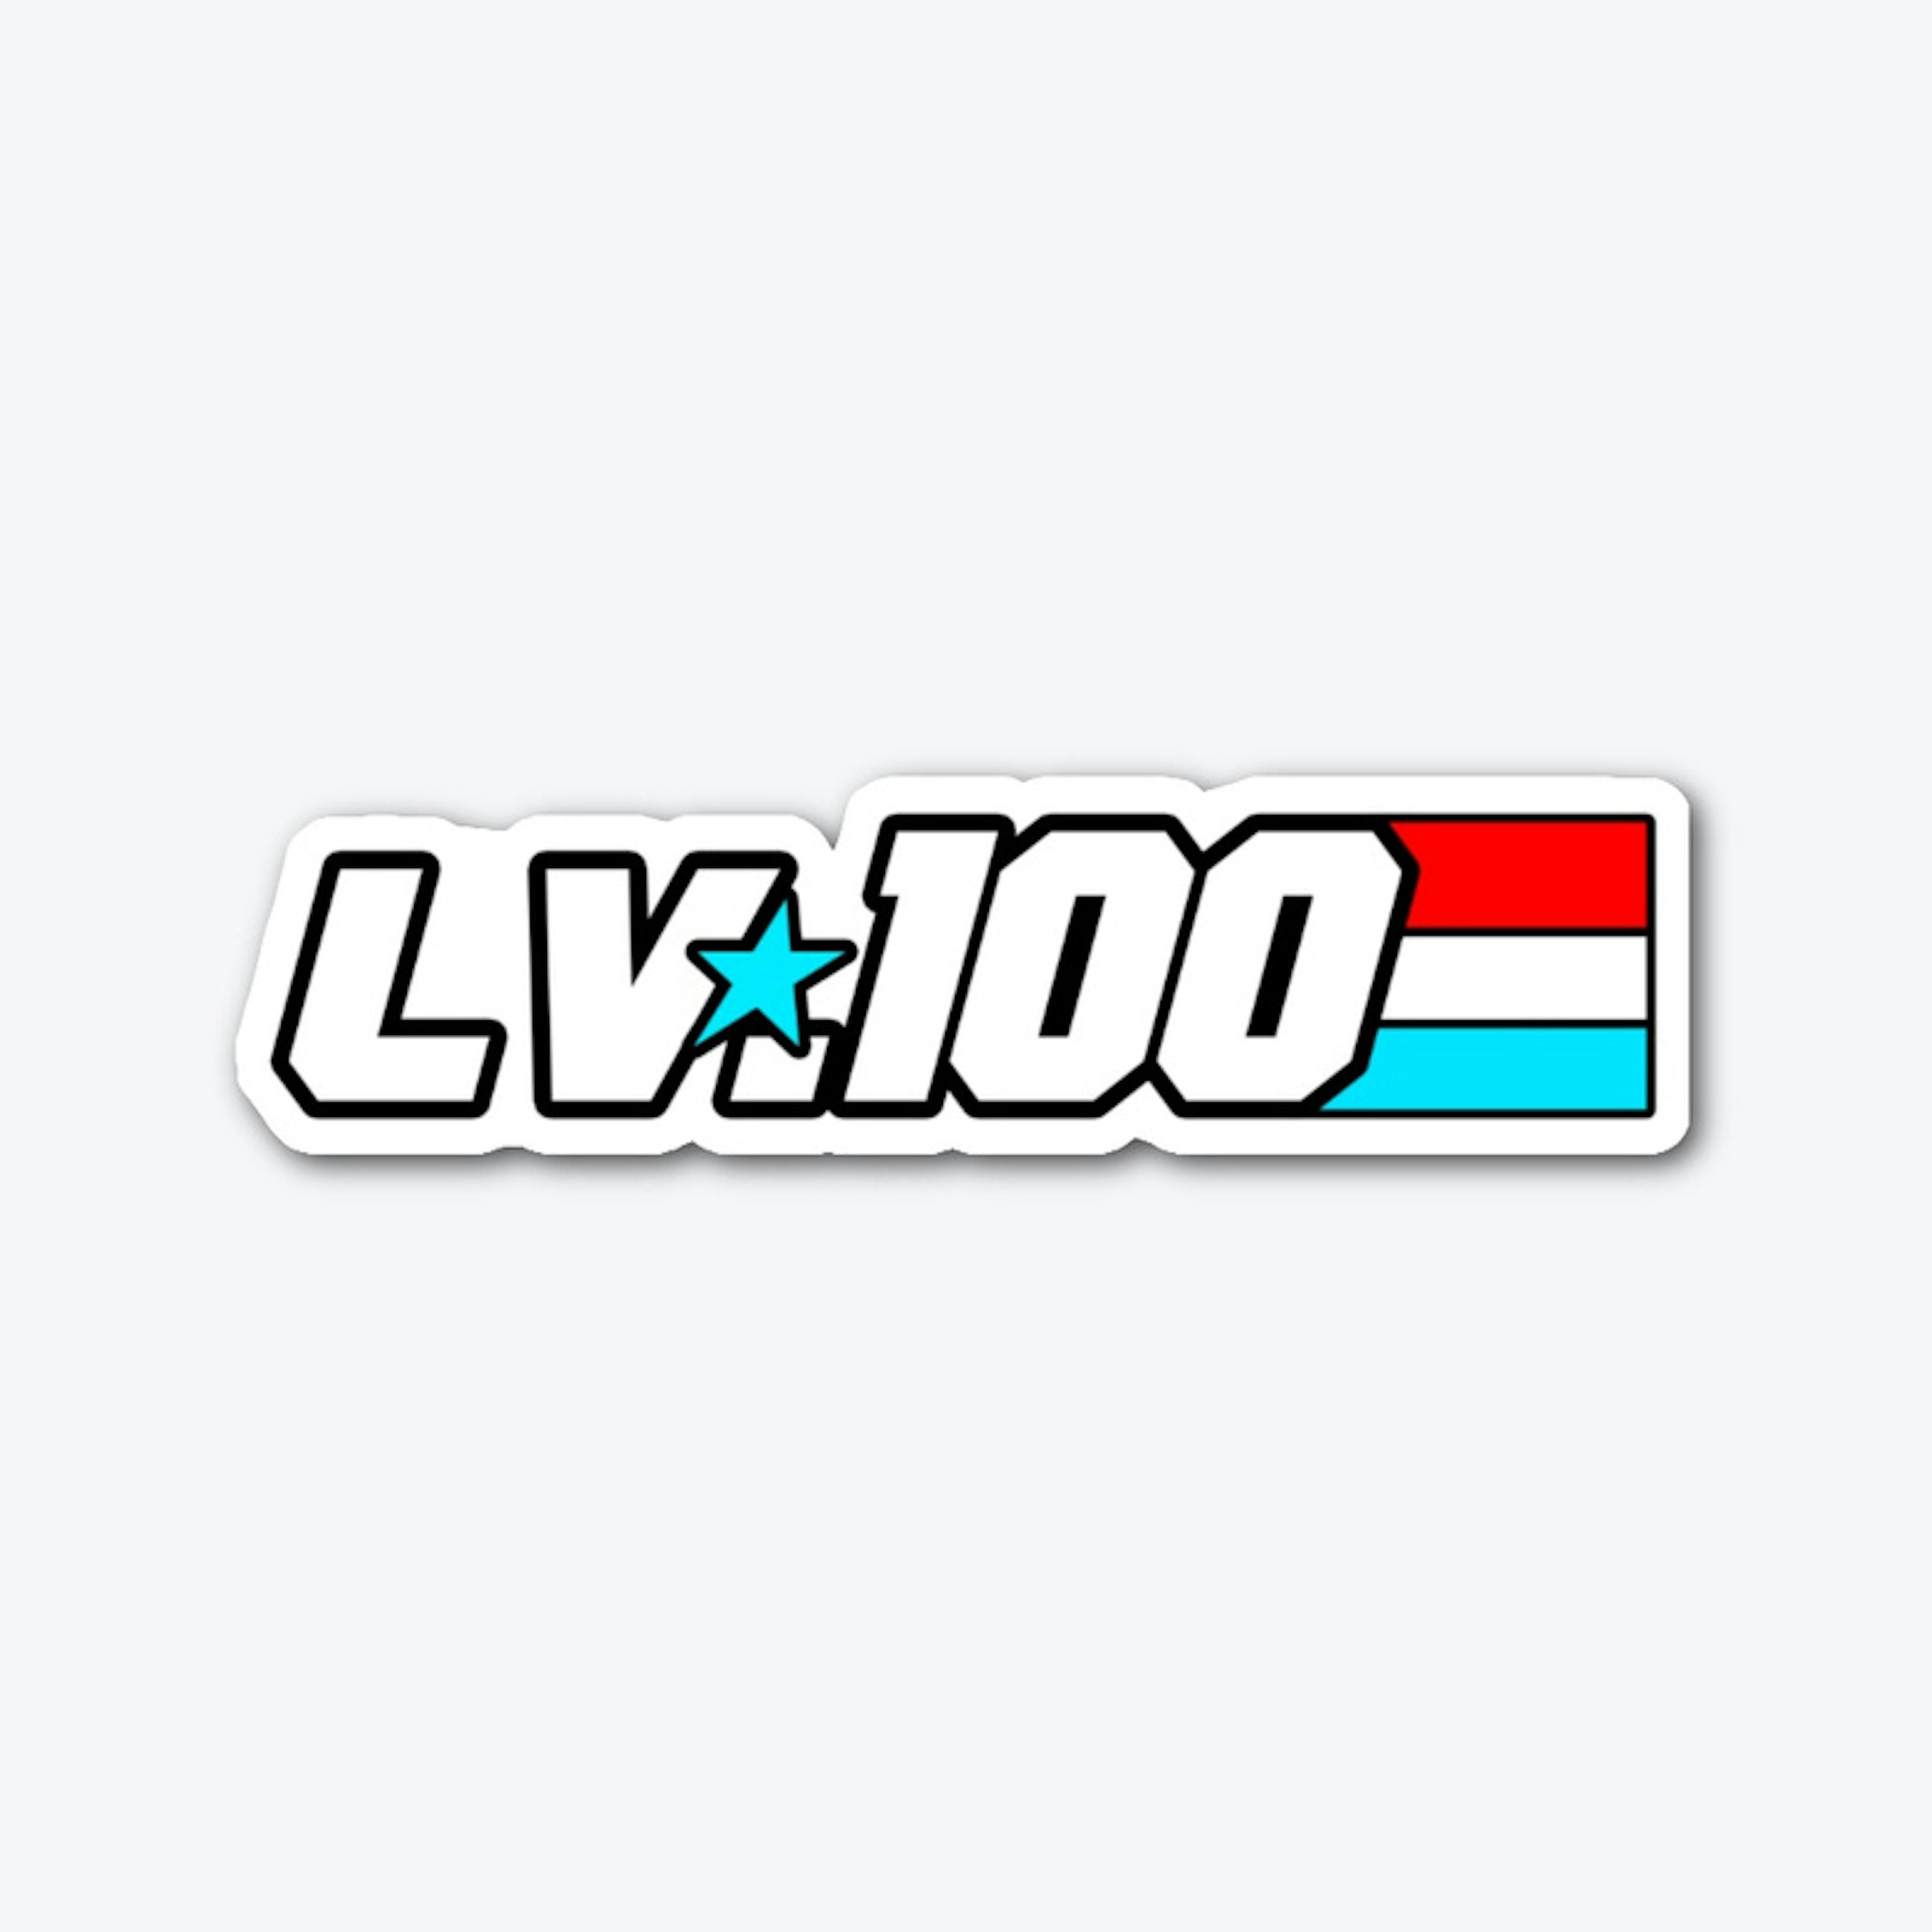 GO LV. 100! - Die-Cut Sticker